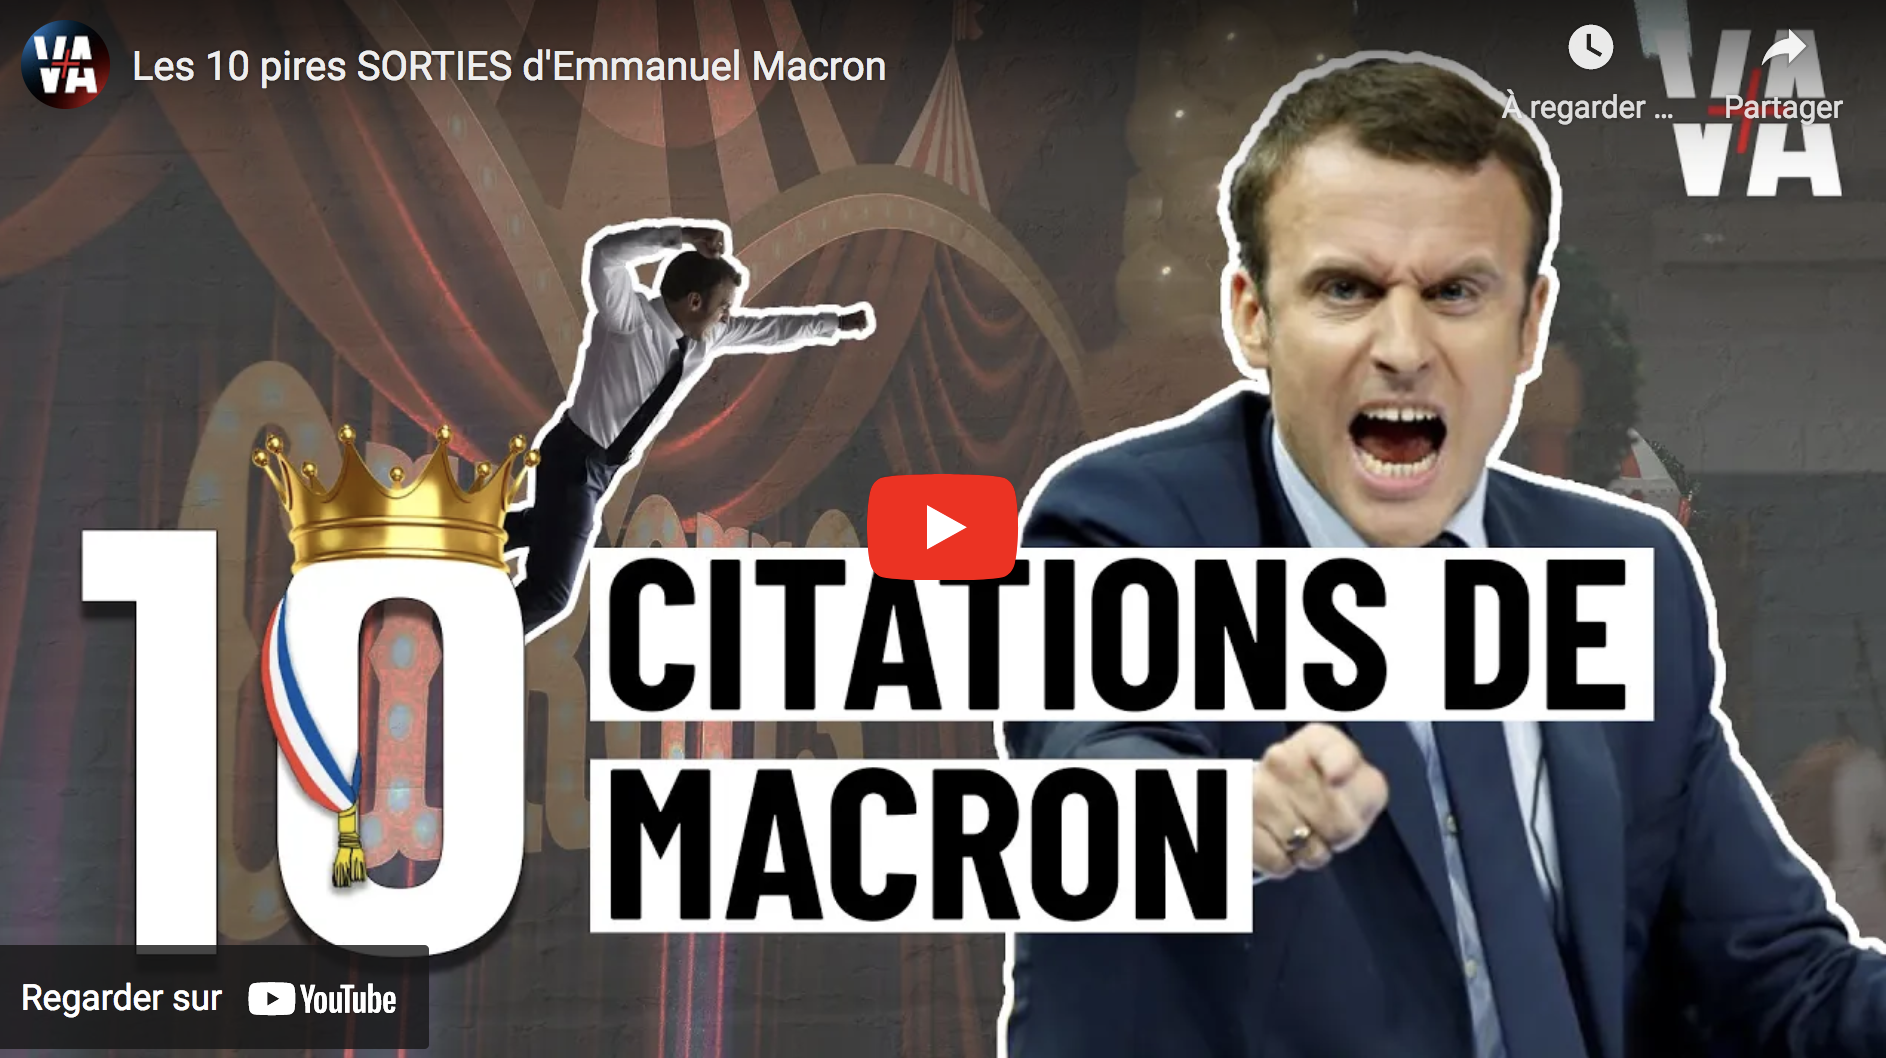 Les 10 pires sorties d’Emmanuel Macron (VIDÉO)